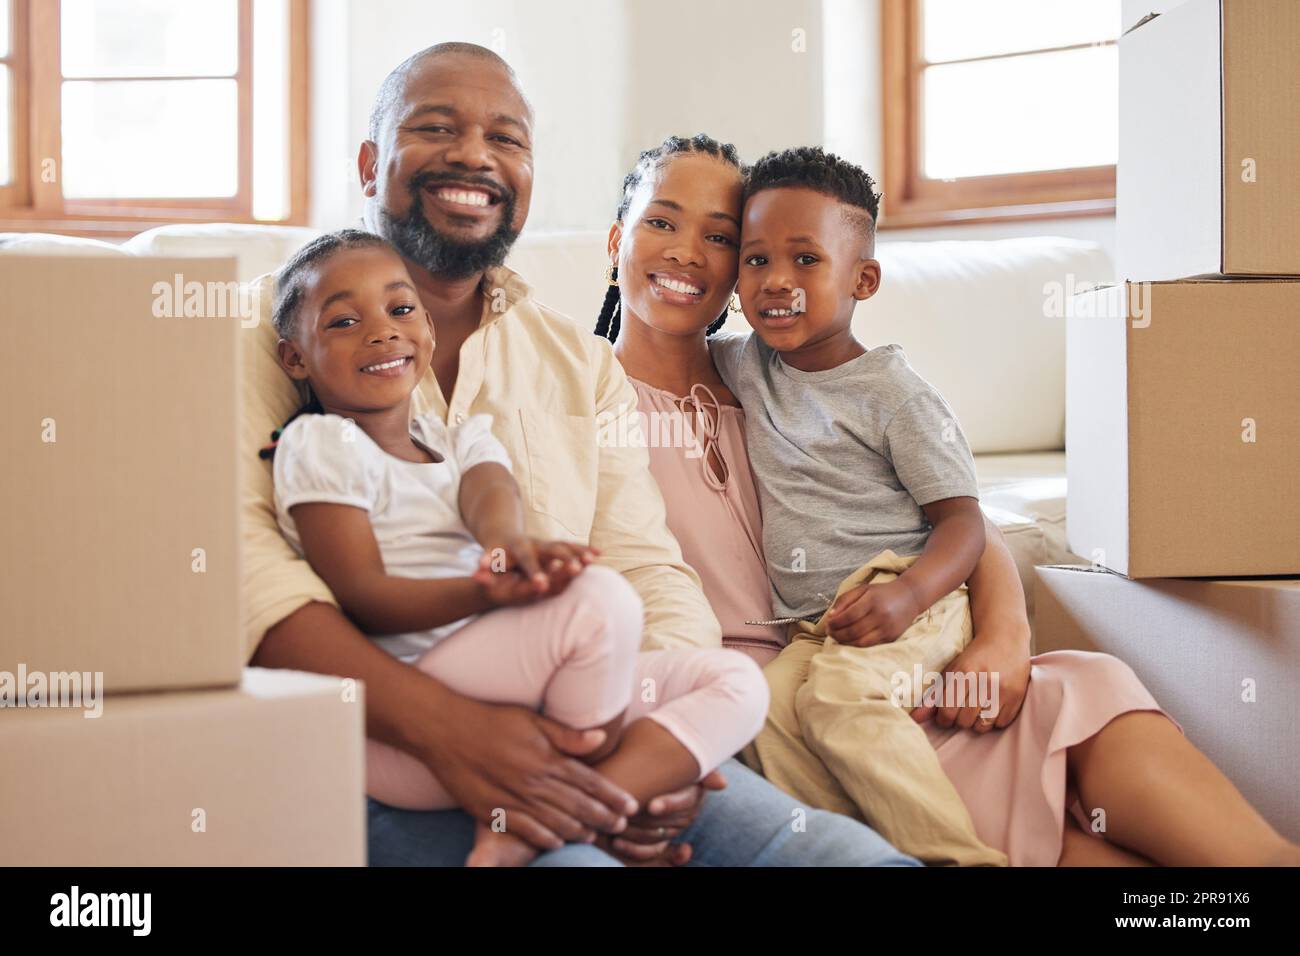 Felice famiglia afroamericana sorridente mentre sedeva sul pavimento in una nuova casa. Ritratto di una giovane felice coppia nera con due bambini che spostano le scatole nella loro nuova casa. Coppia nera che compra proprietà Foto Stock